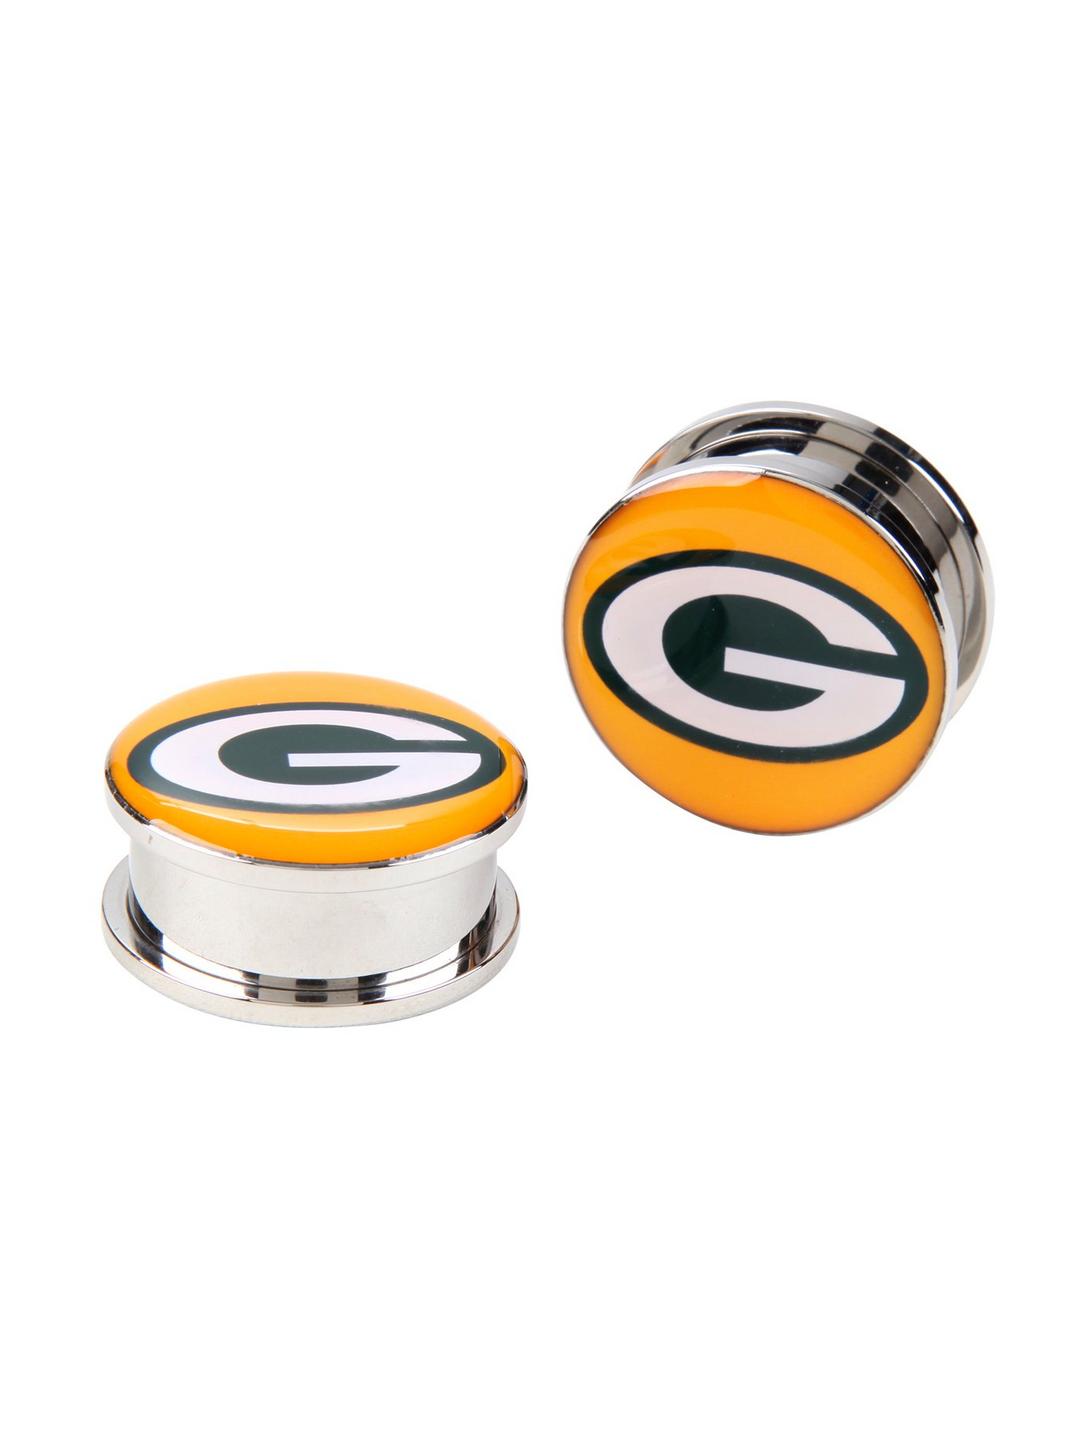 NFL Green Bay Packers Steel Spool Plug 2 Pack, GREEN, hi-res